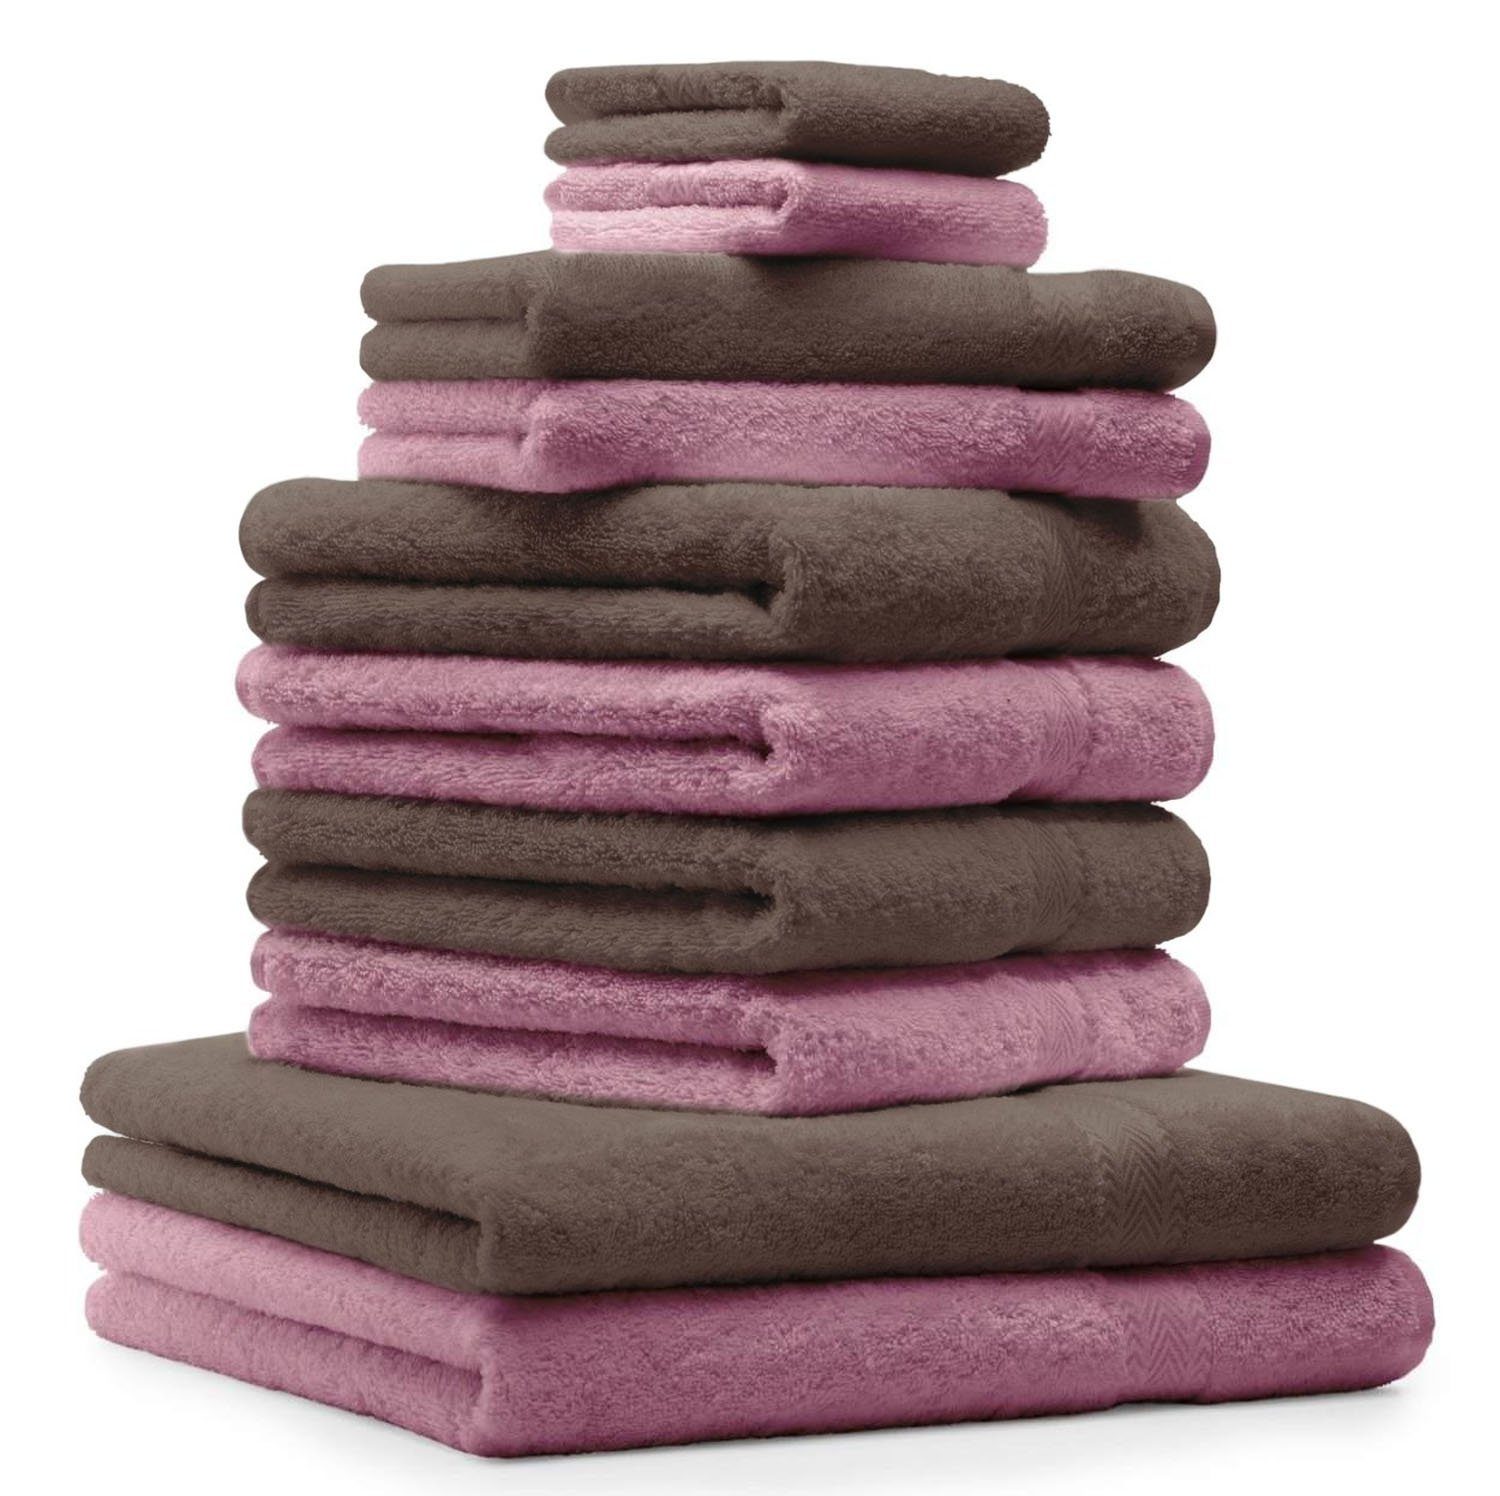 Betz Handtuch Set 10-TLG. Handtuch-Set Farbe und altrosa Baumwolle nussbraun, 100% Classic